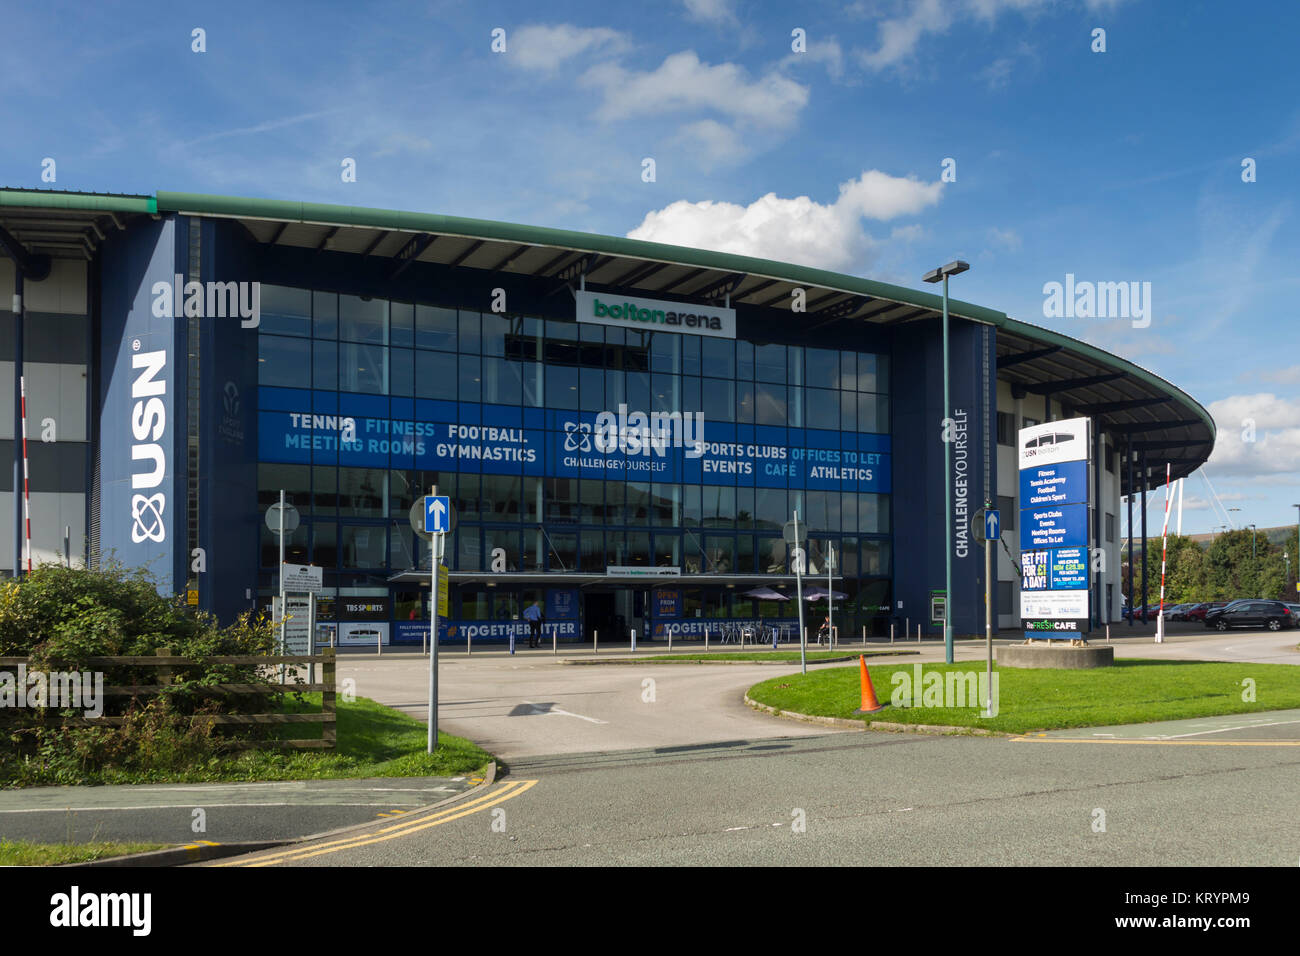 Bolton Arena indoor sports arena en Middlebrook Retail y Parque de Ocio, Horwich. Las instalaciones incluyen gimnasios, pistas de tenis e instalaciones de fútbol. Foto de stock